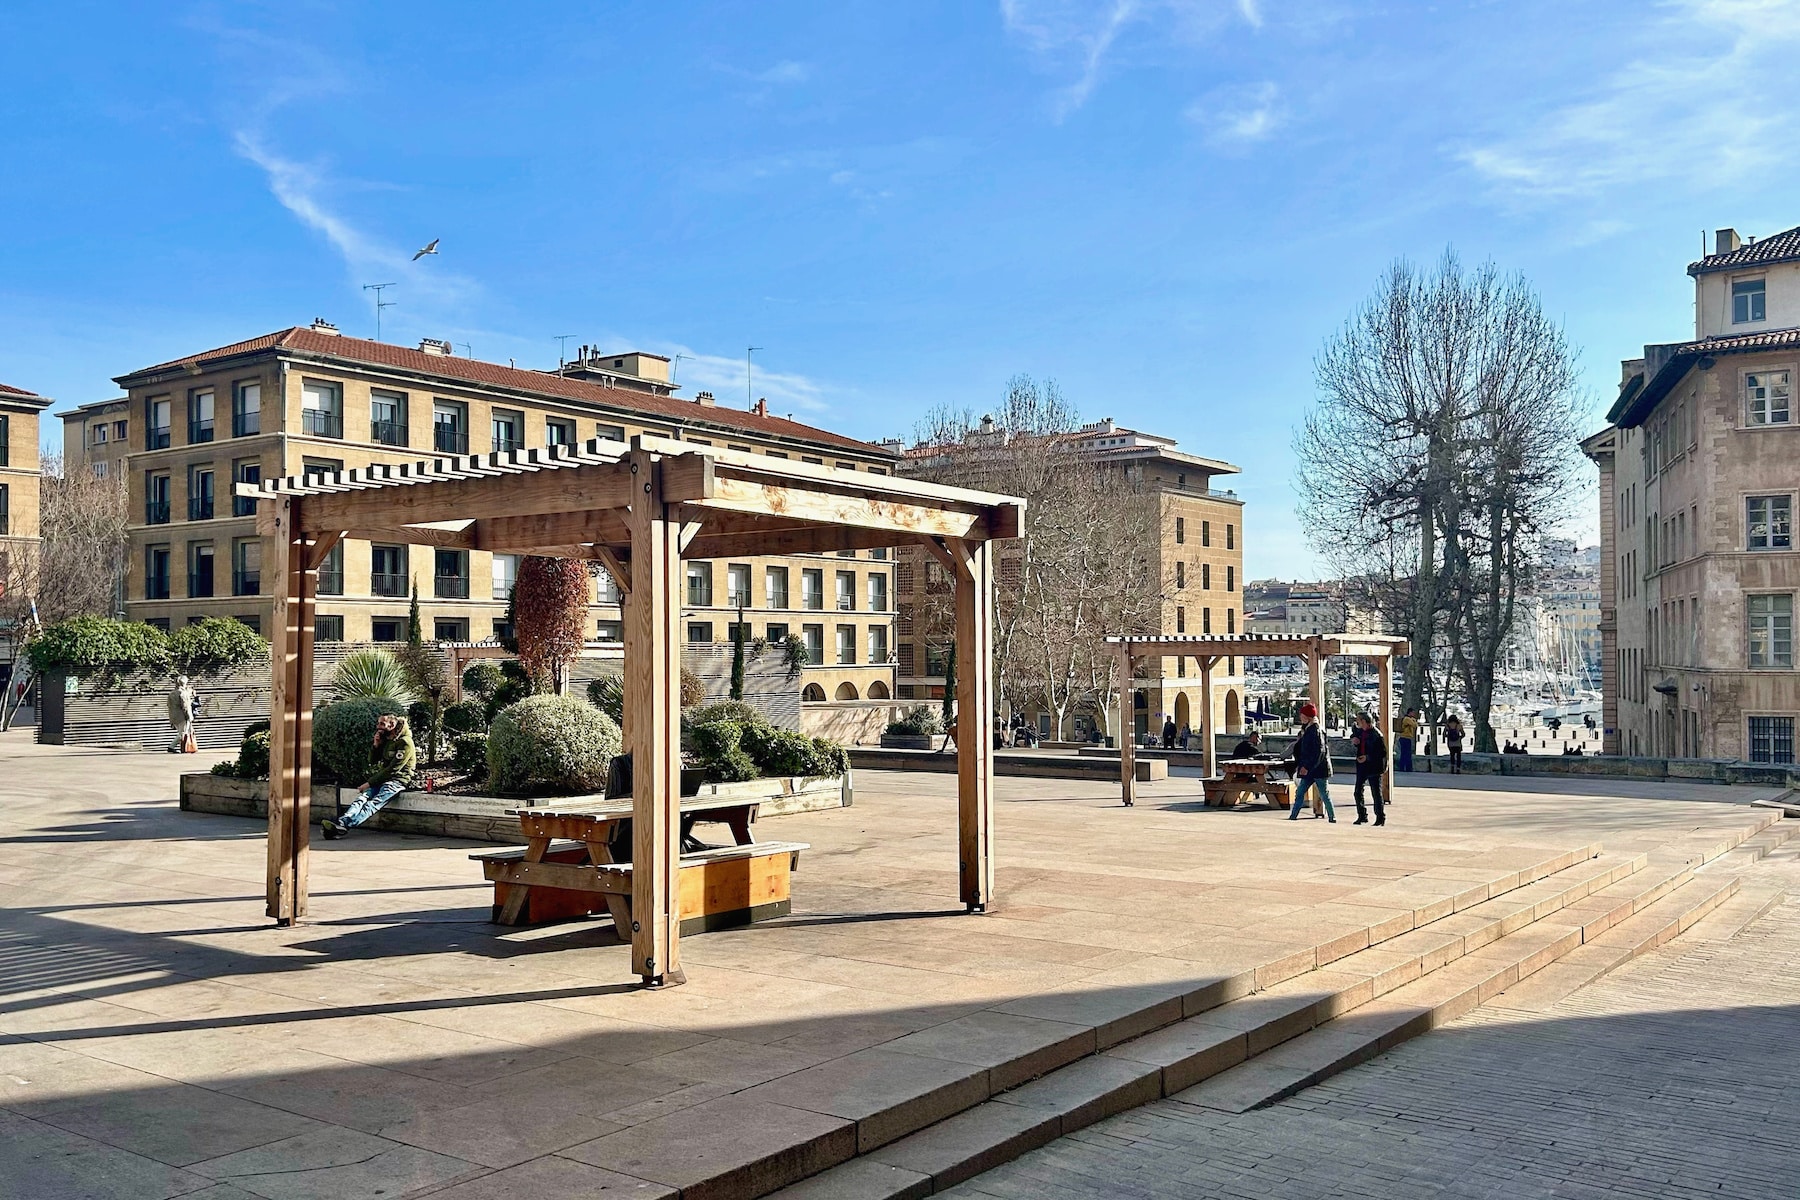 mobilier urbain, Marseille veut embellir ses espaces publics avec du mobilier urbain amovible, Made in Marseille